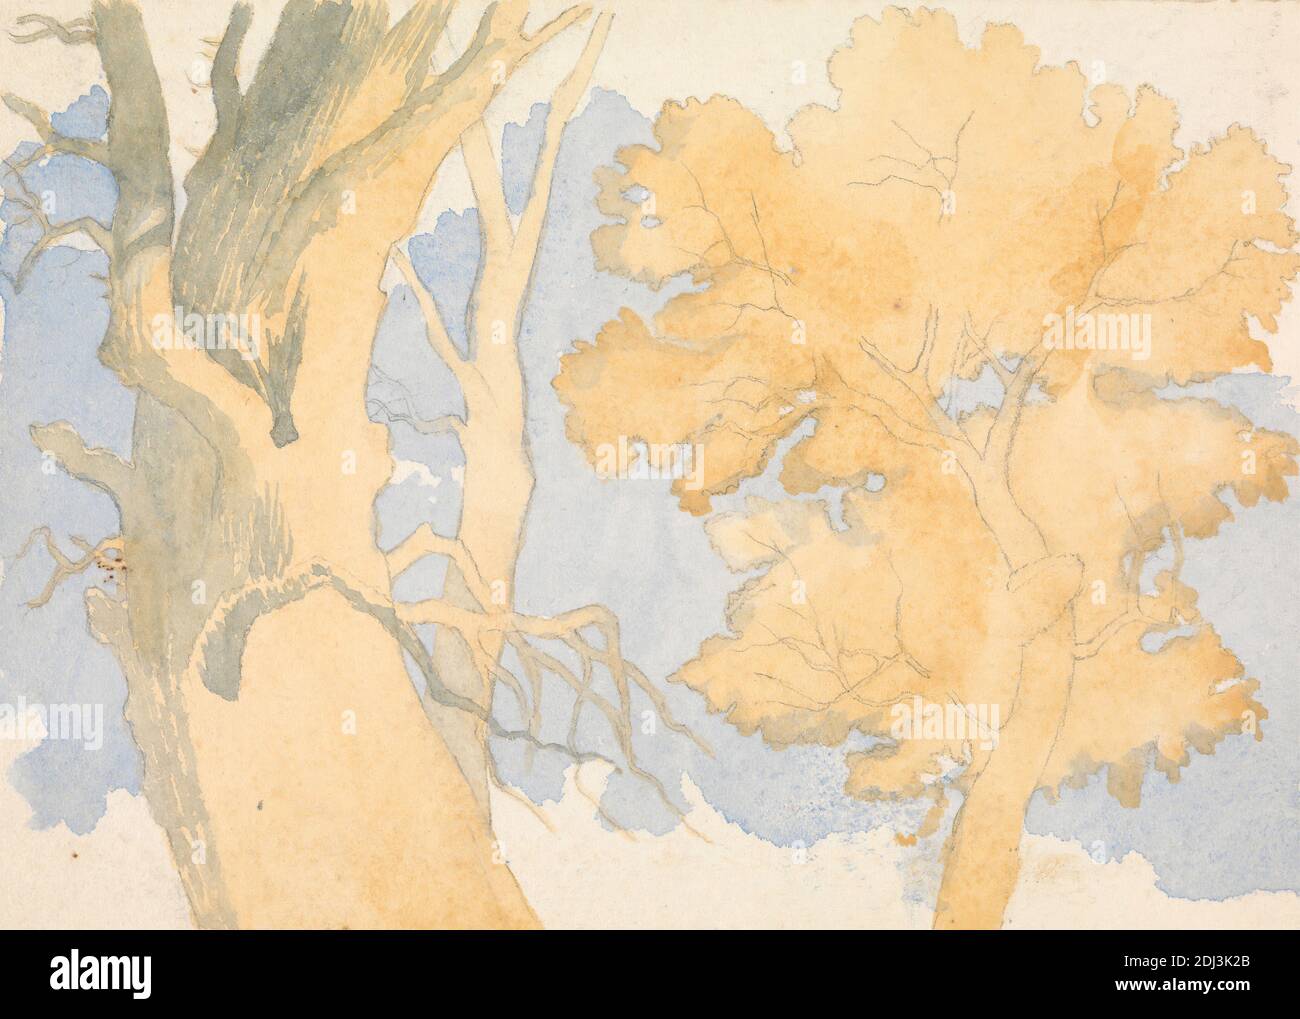 Alberi, Richard Pettigrew Leitch, attivo 1870, ca. 1870, acquerello e grafite su carta di wove crema di spessore moderato, leggermente testurizzata, foglio: 5 × 7 pollici (12.7 × 17.8 cm Foto Stock